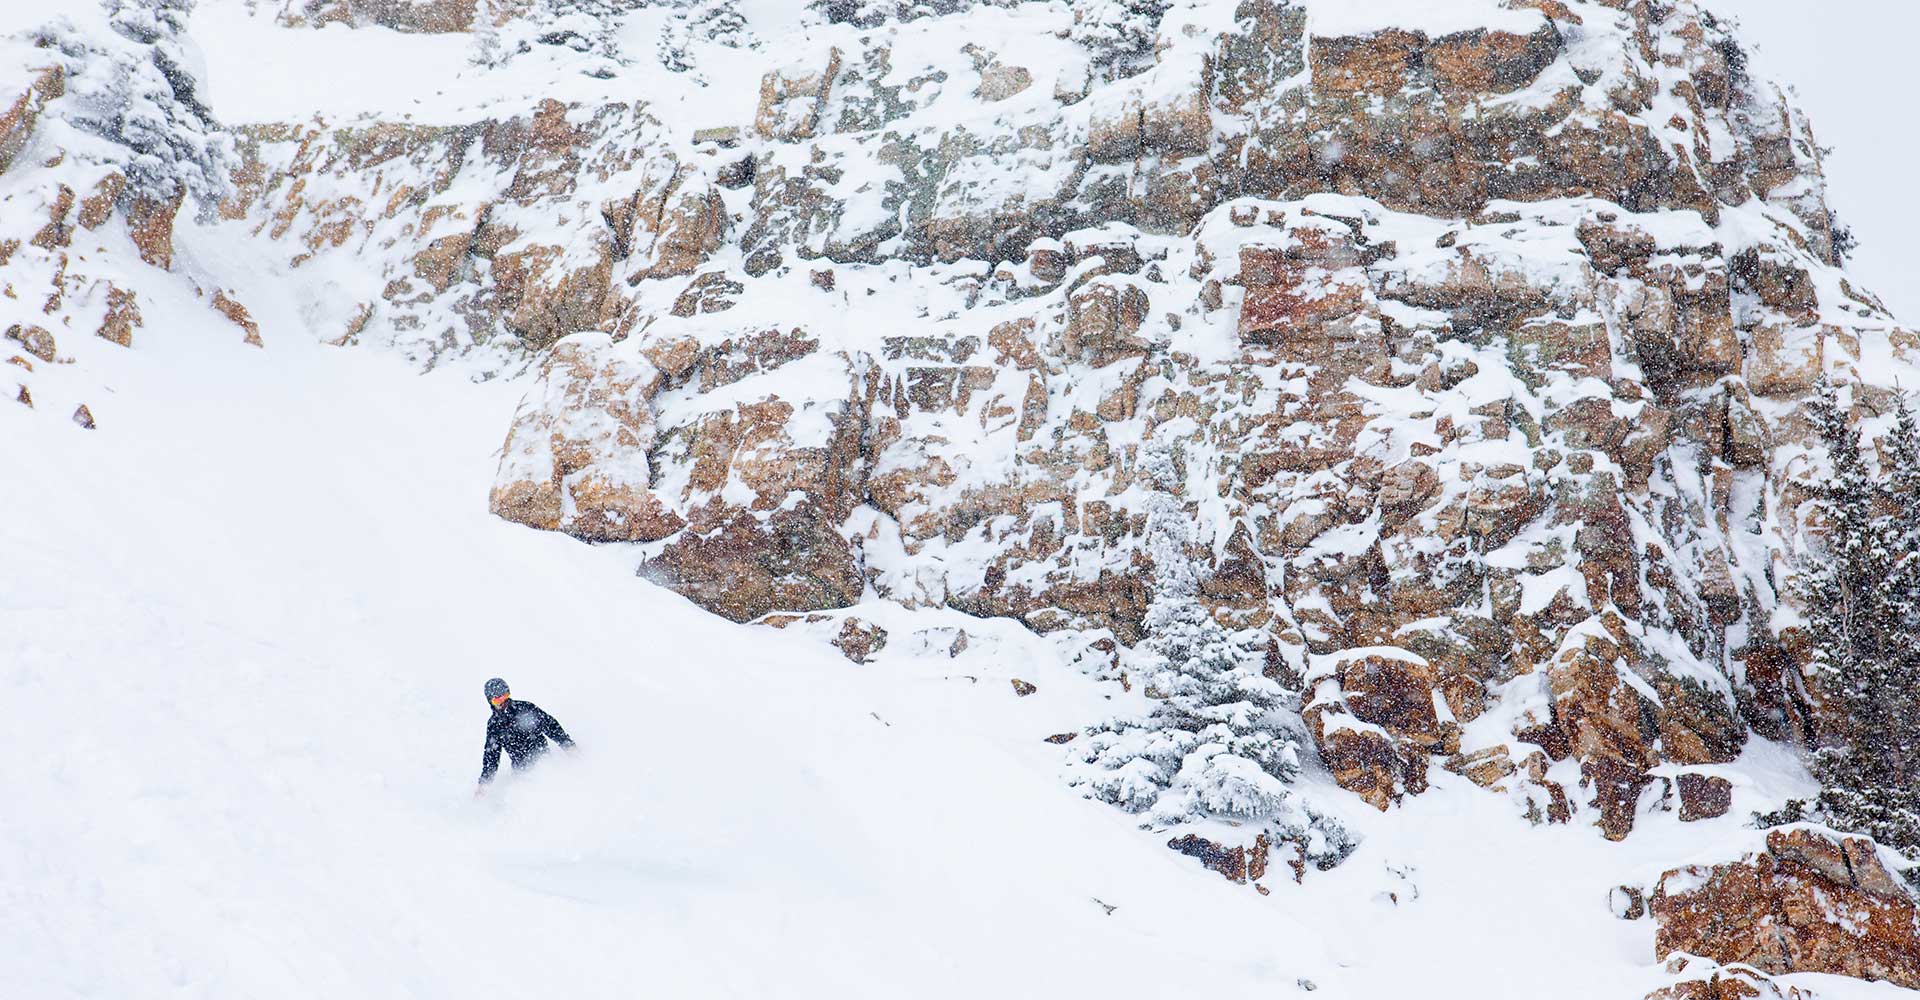 An expert snowboarder navigates the steeps at Snowmass.